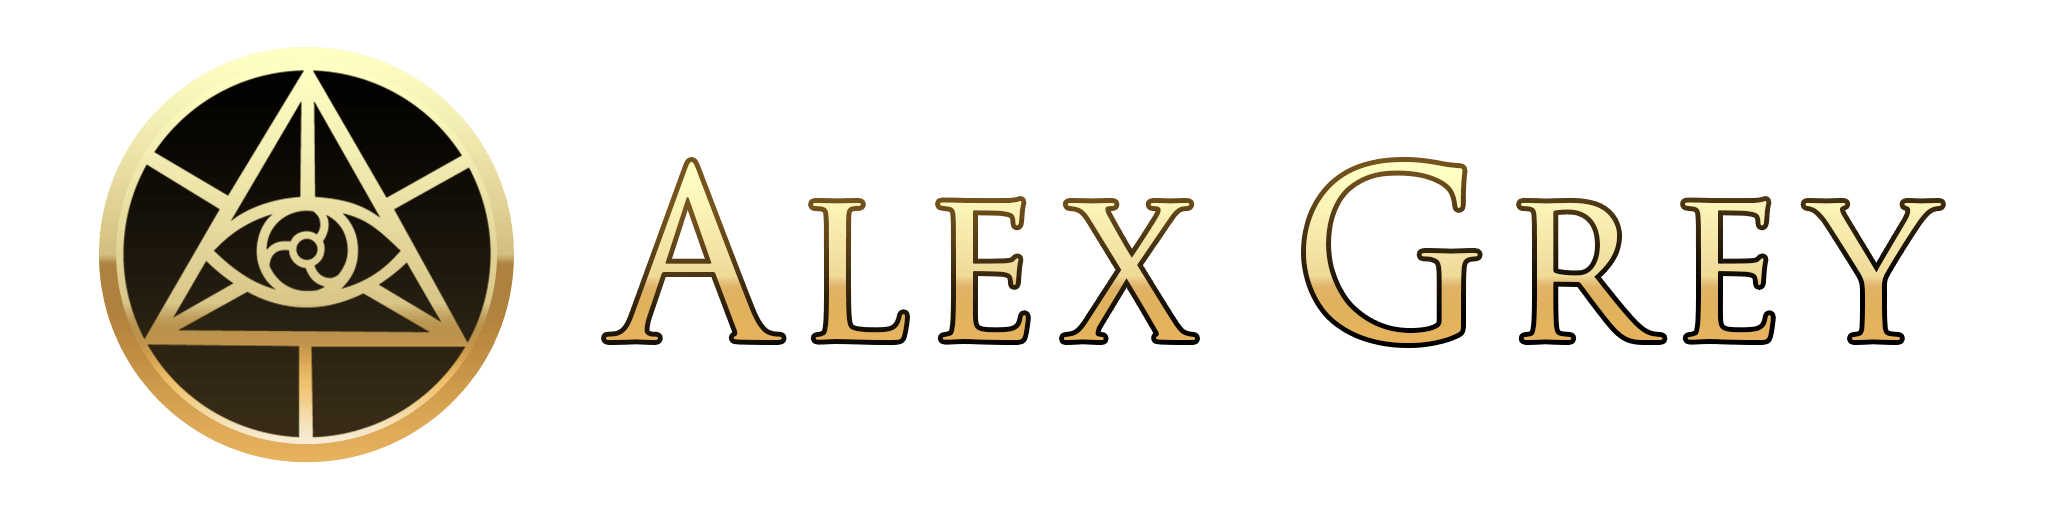 Grey Logo - Alex Grey